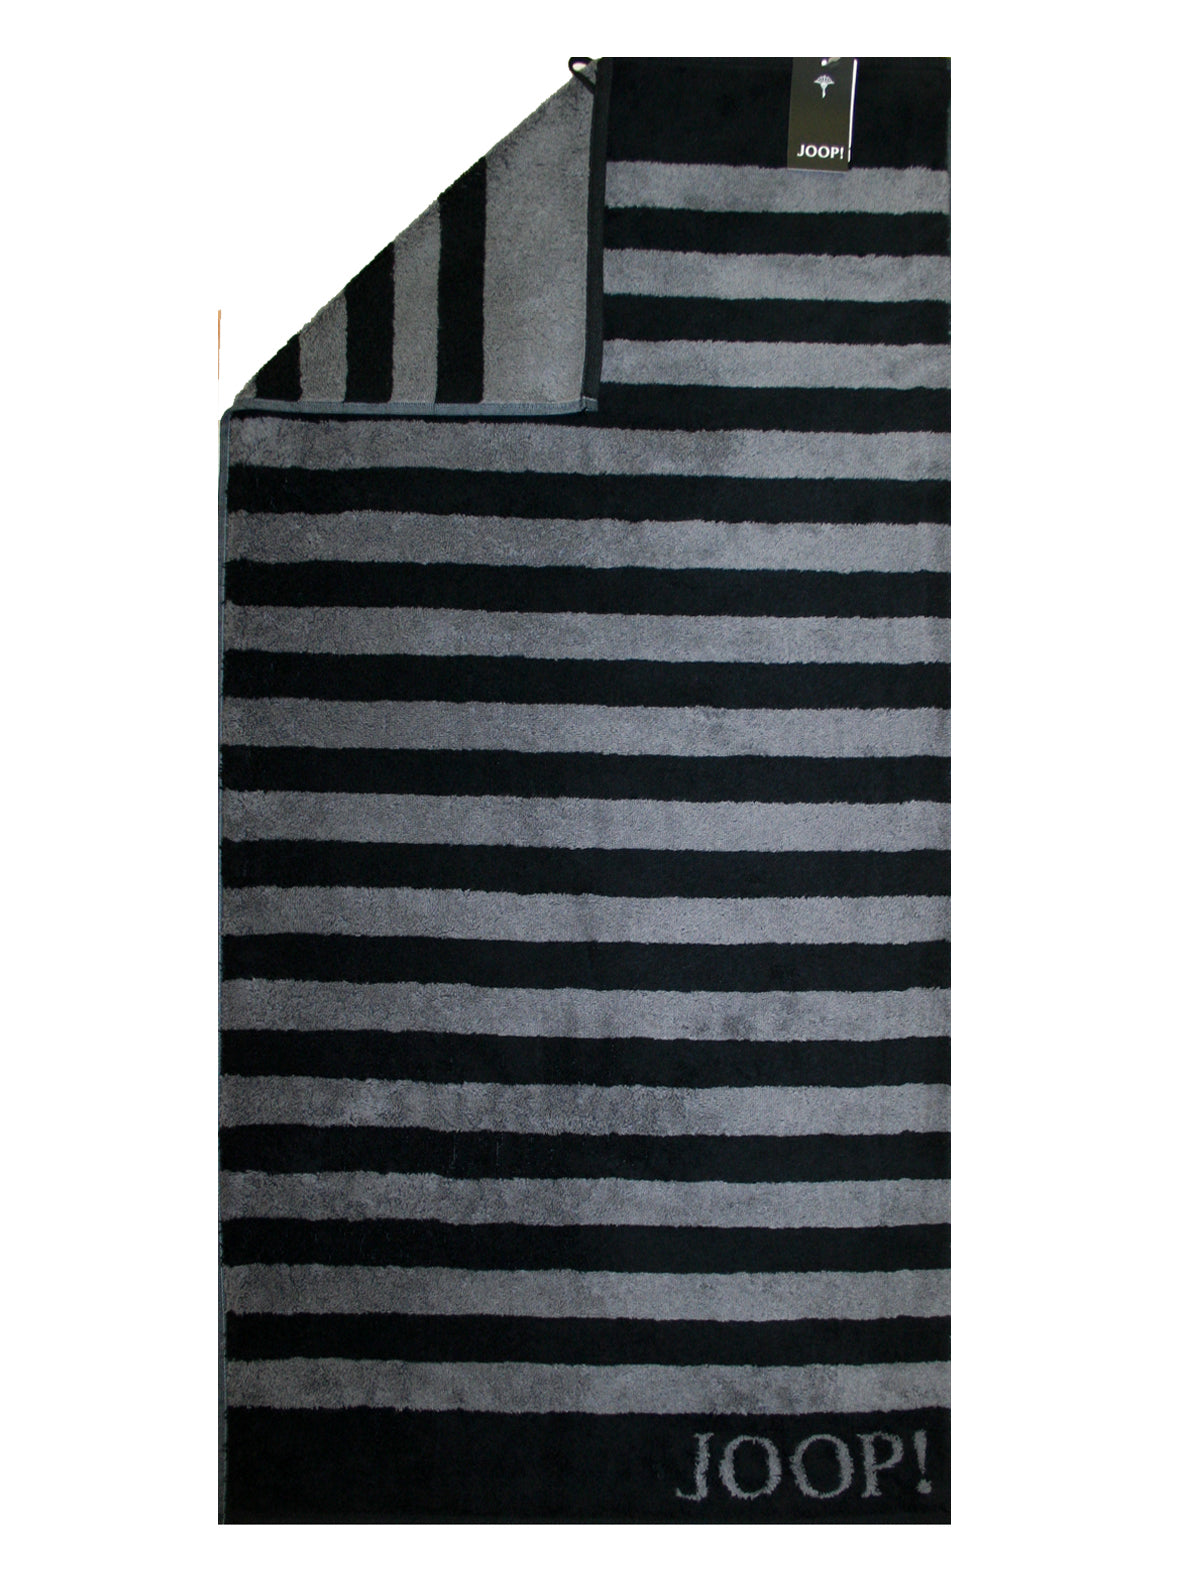 Joop! Handtuch Serie Stripes 1610/90 Tiefschwarz Spitzenqualität